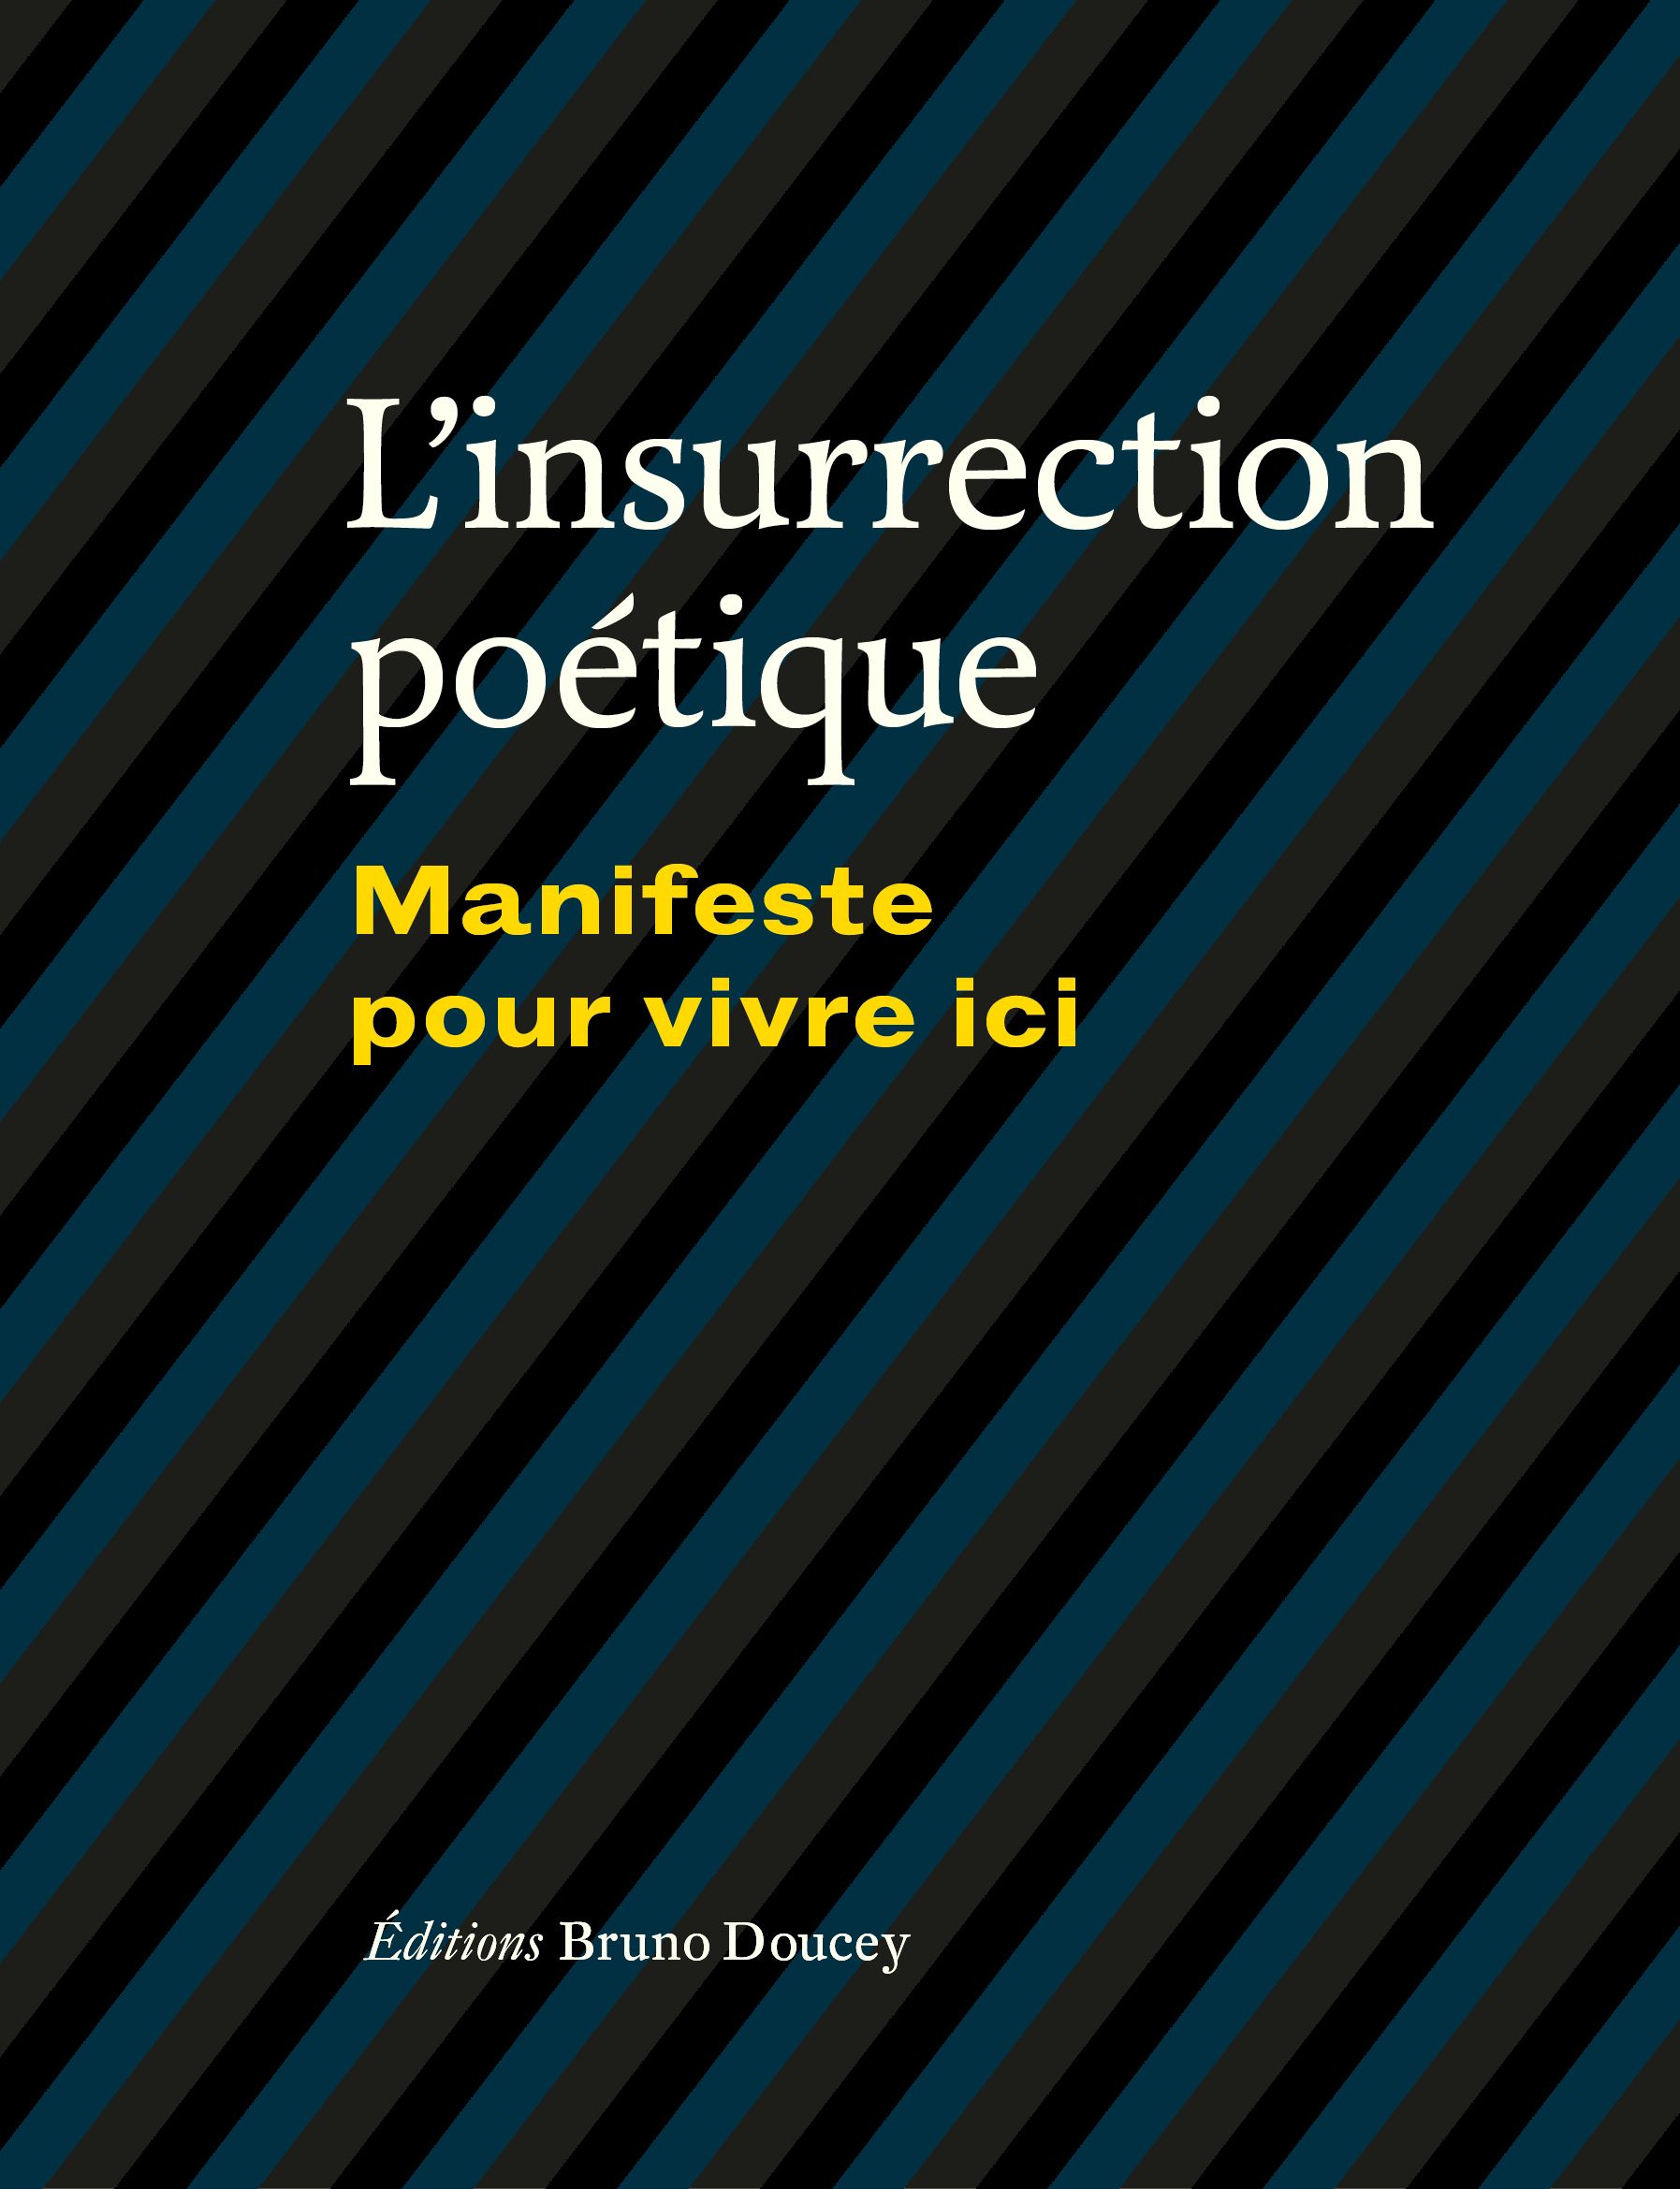 Couverture du livre 'L'insurrection poétique, Manifeste pour vivre ici.'